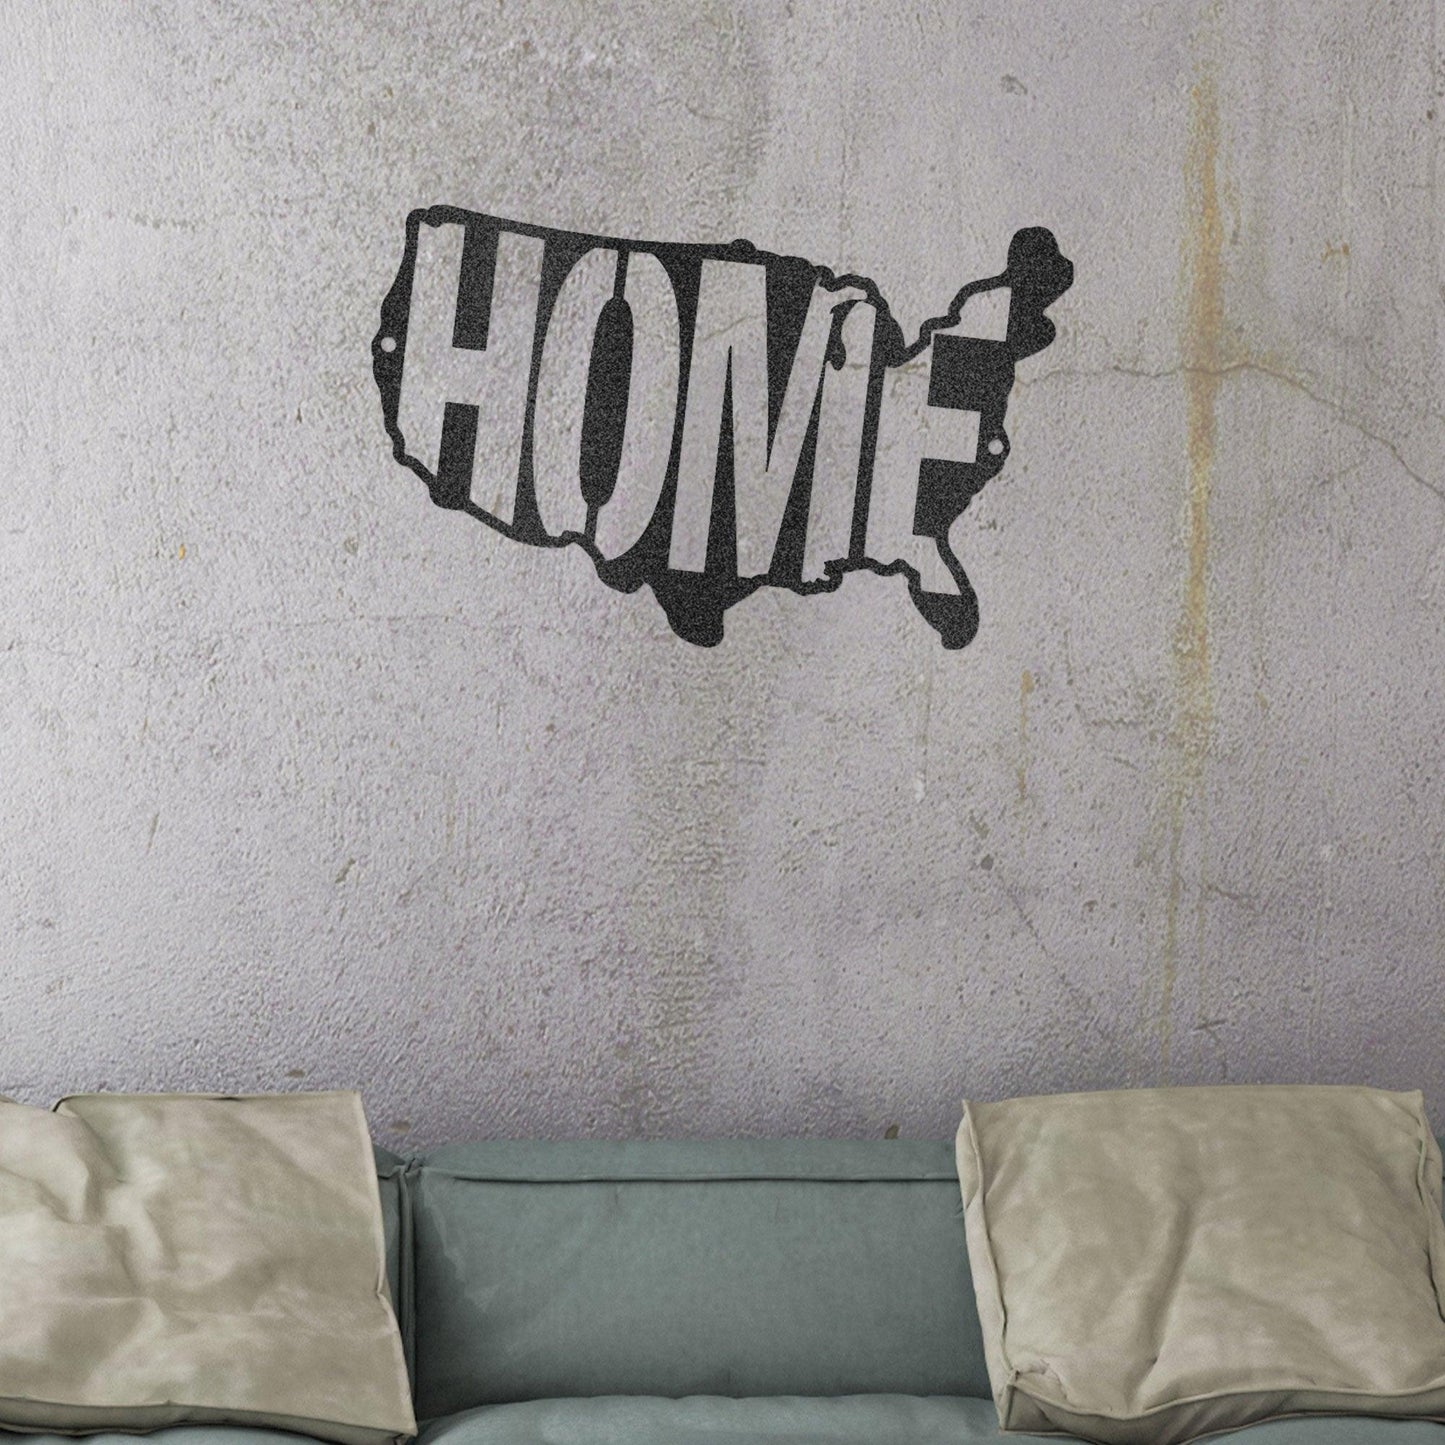 USA Home Indoor Outdoor Steel Wall Sign - Mallard Moon Gift Shop